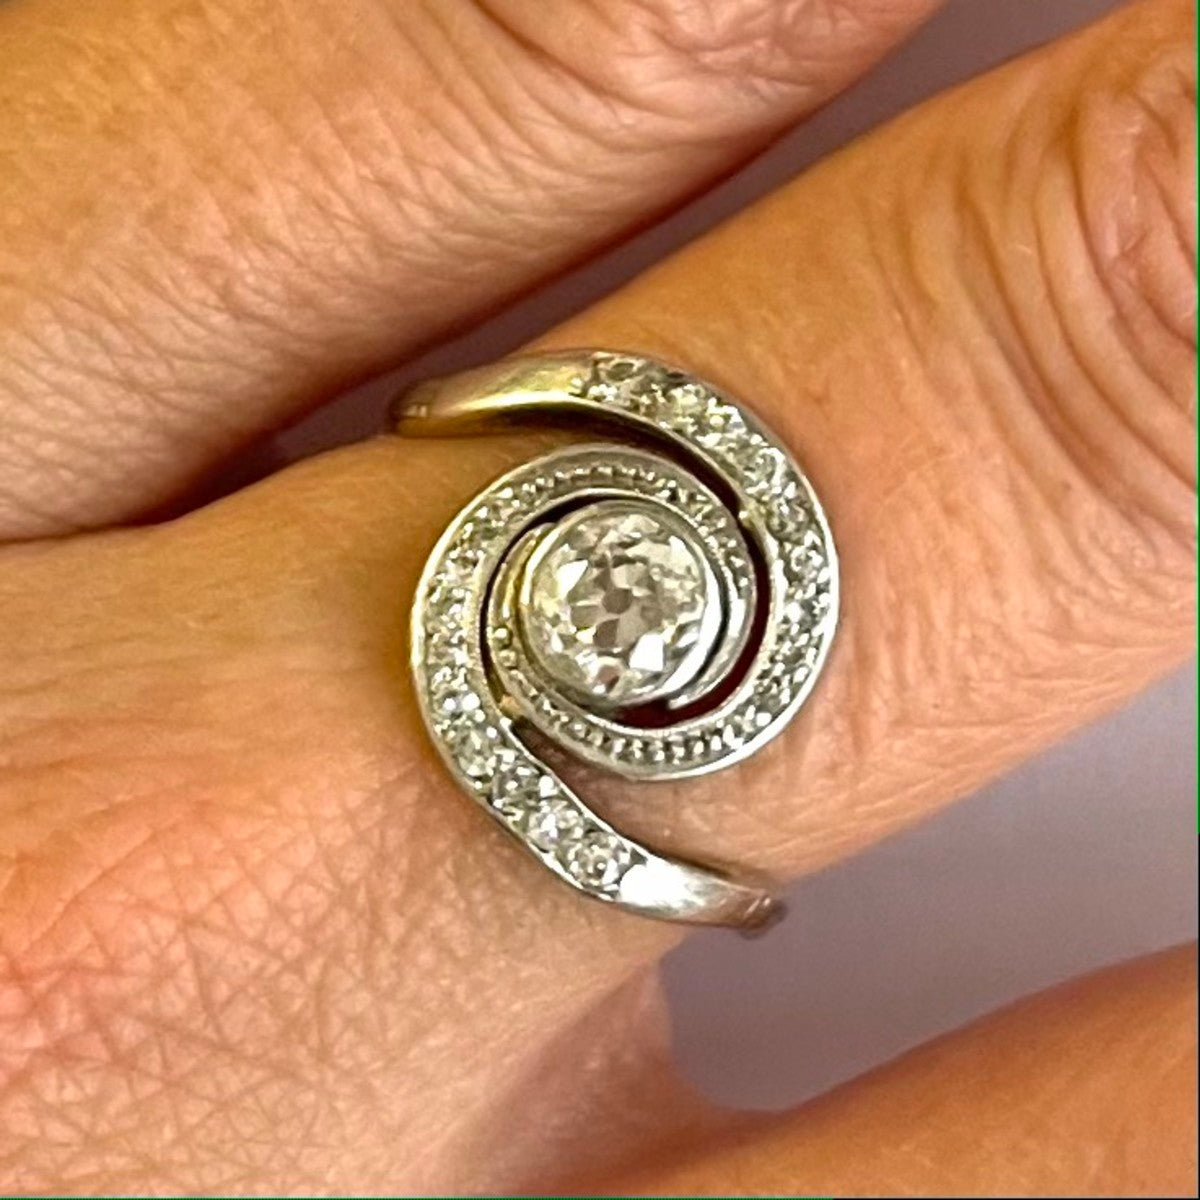 1940s 14KT White Gold Diamond Ring on finger